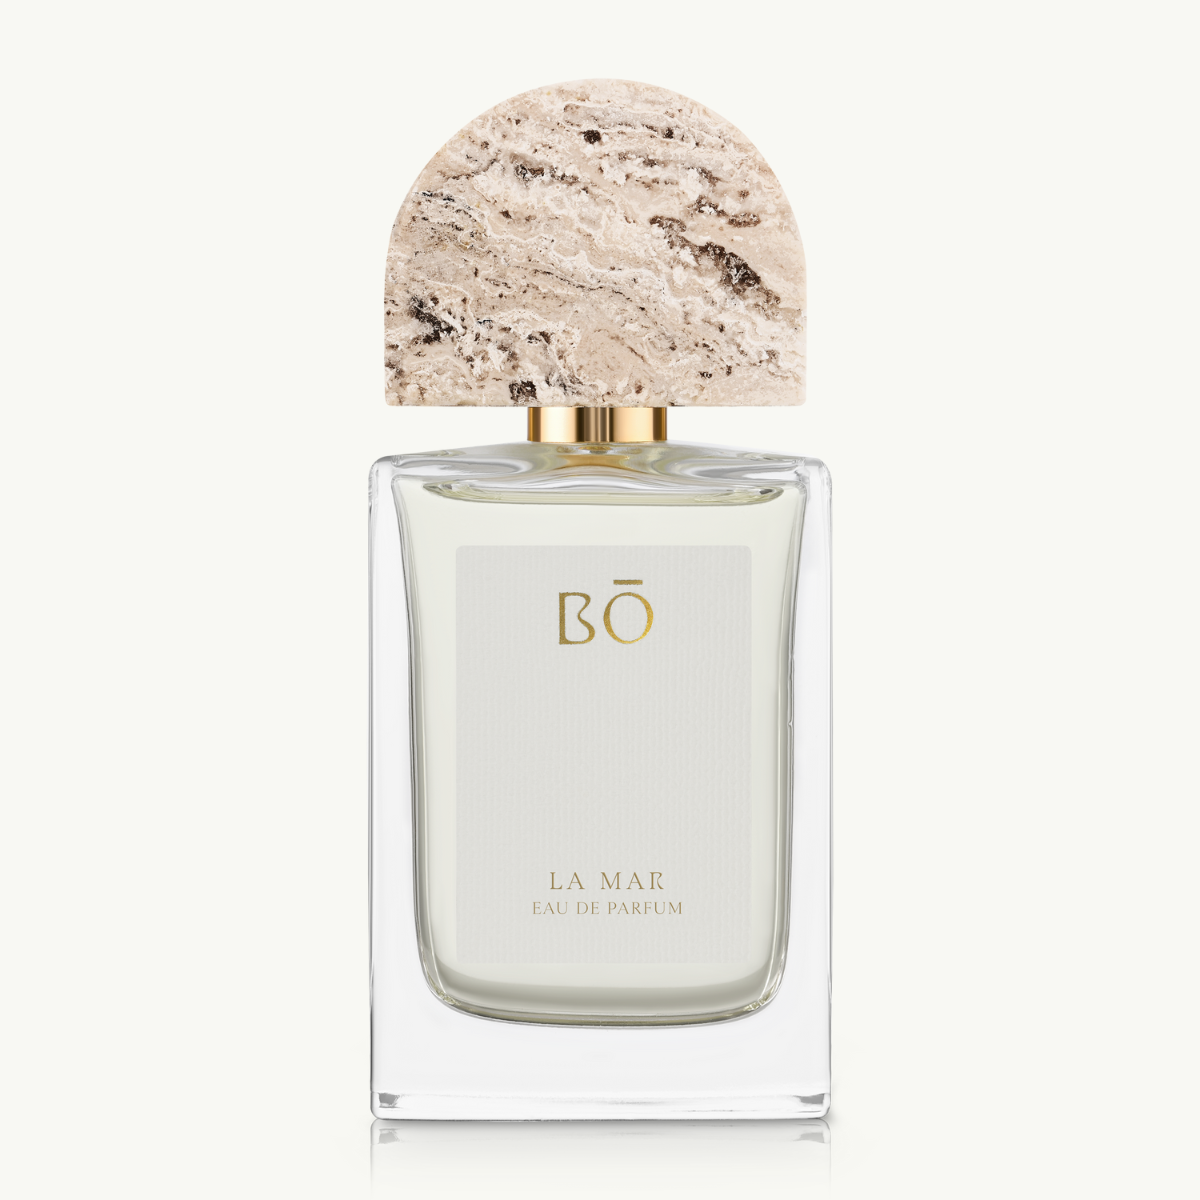 House of Bo Women's La Mar Eau de Parfum